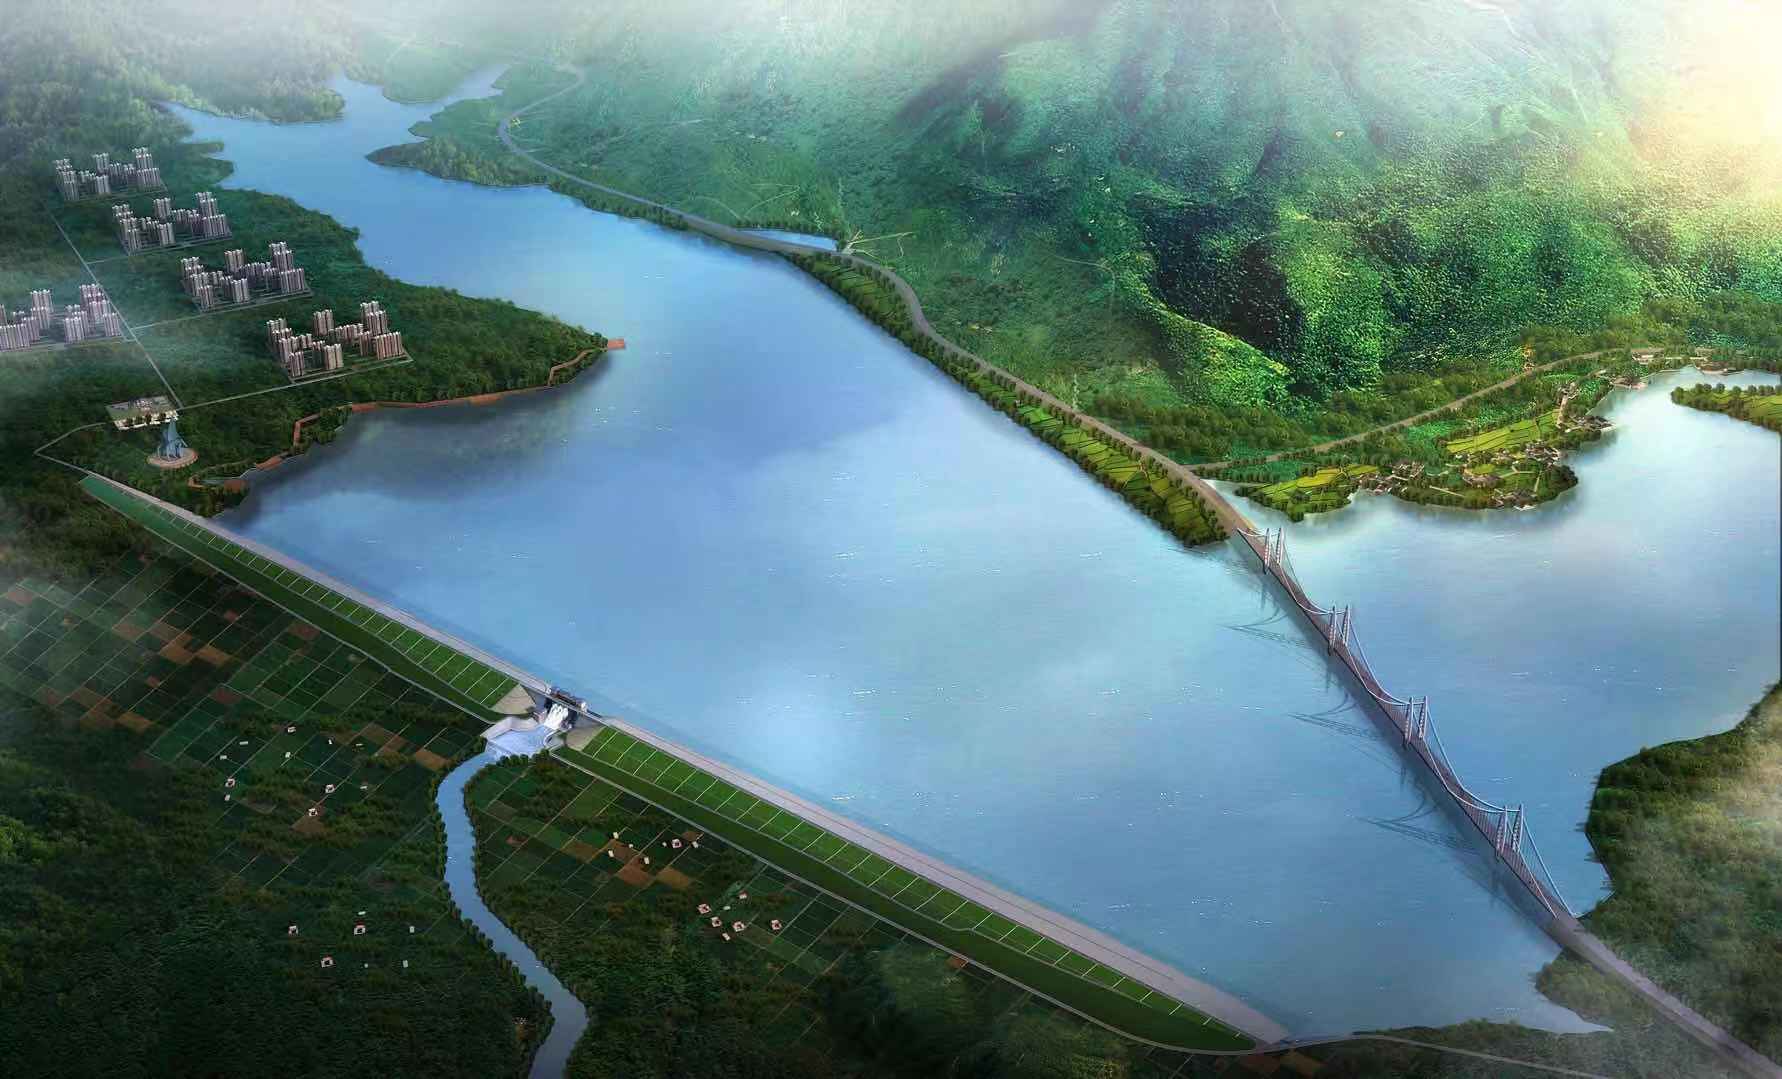 庄里水库位于山亭区和滕州市境内,是山东省近30年来规划建设的唯一